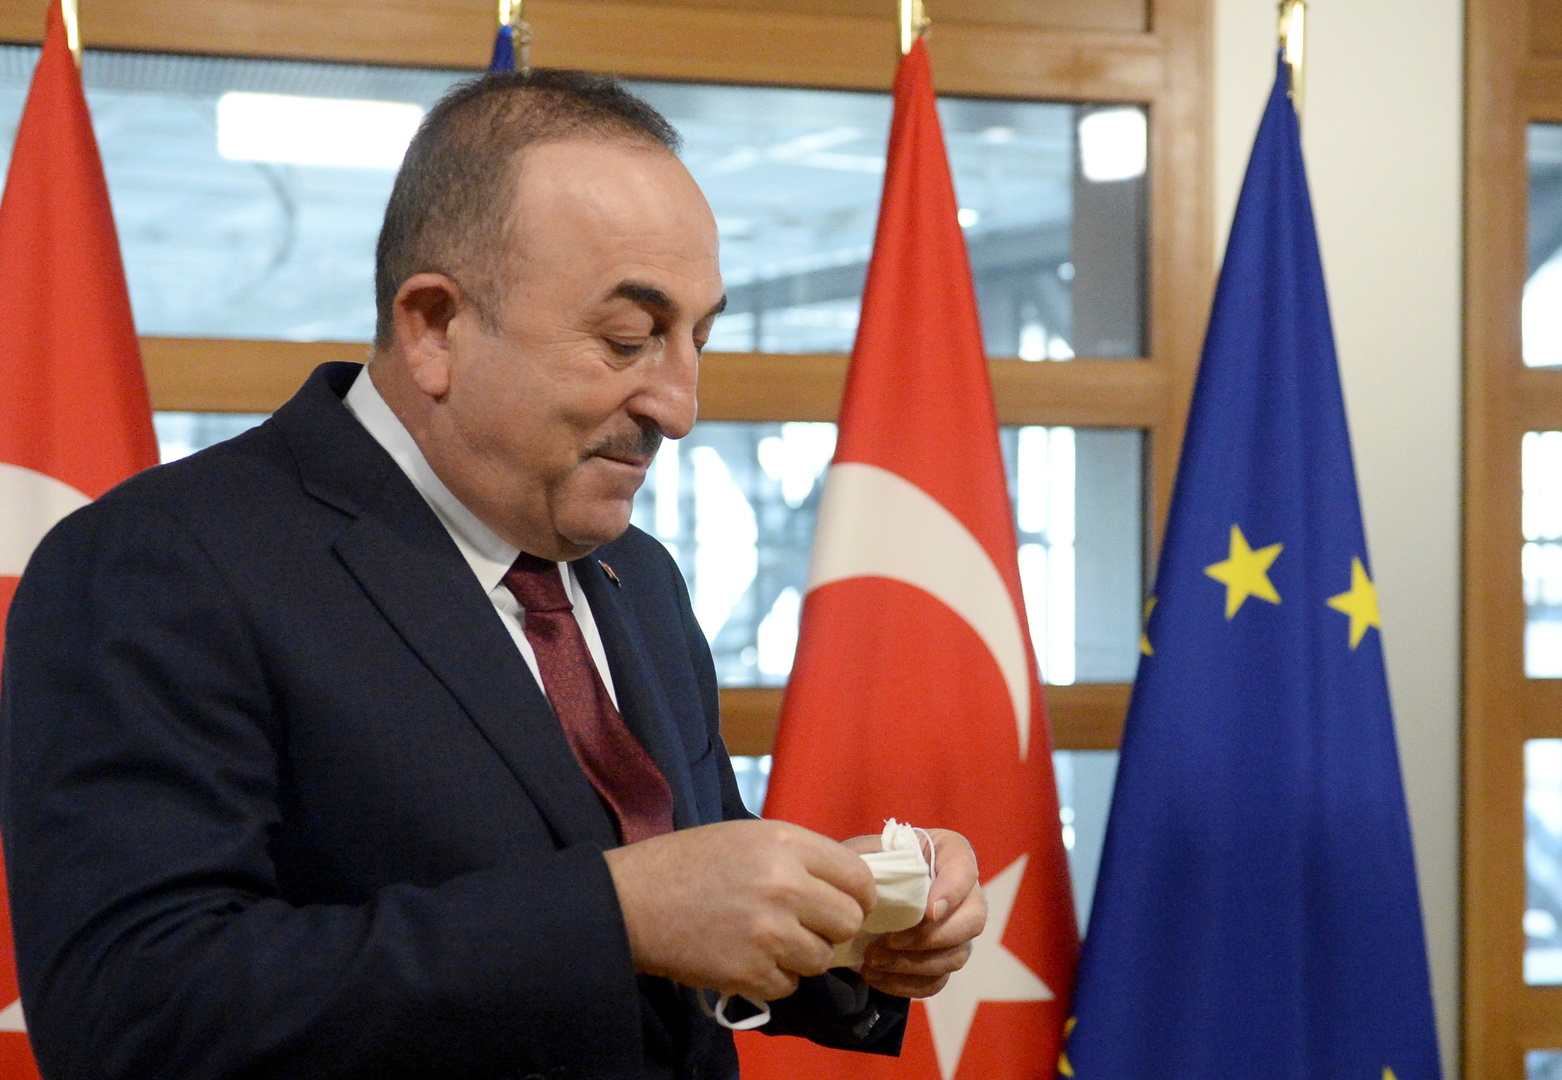 تشاووش أوغلو: يجب أن يتخلى البرلمان الأوروبي عن أحكامه المسبقة والتمييز تجاه تركيا